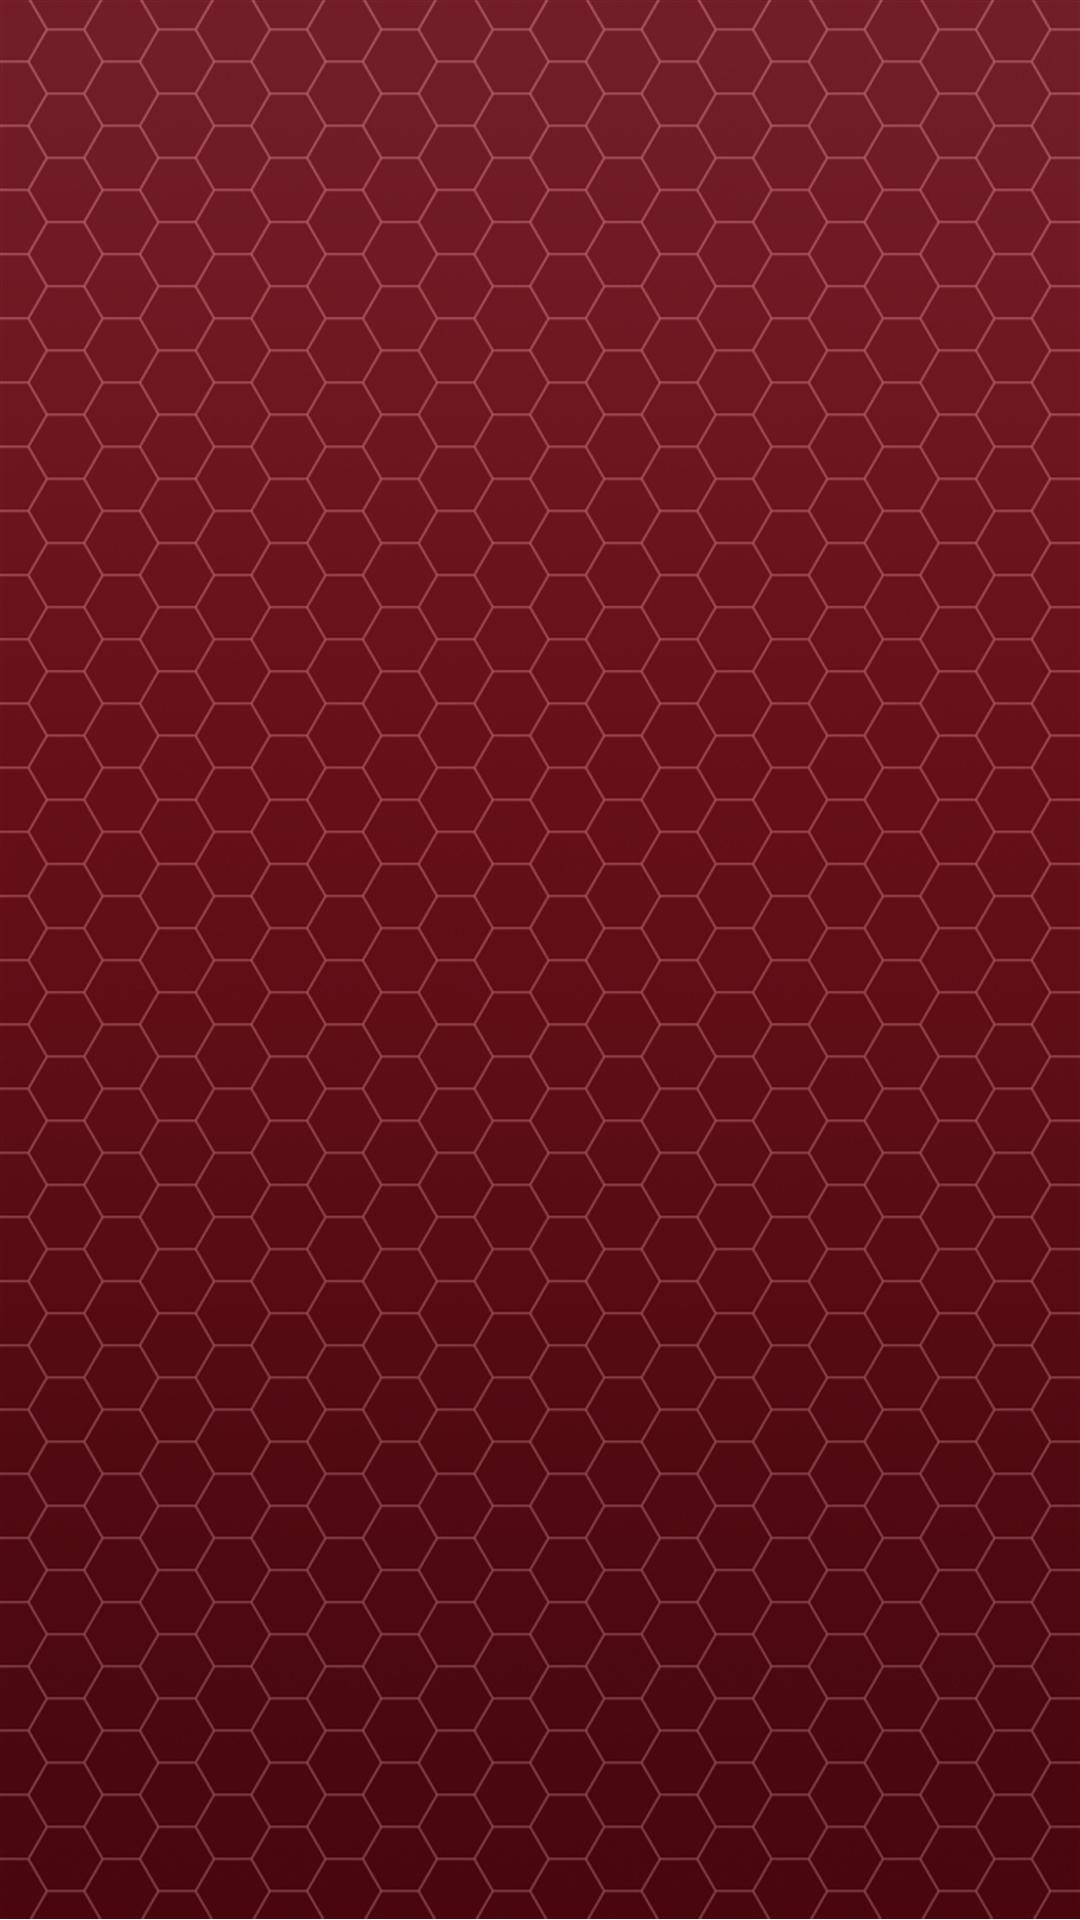 Red iPhone 6 Plus Wallpaper - WallpaperSafari